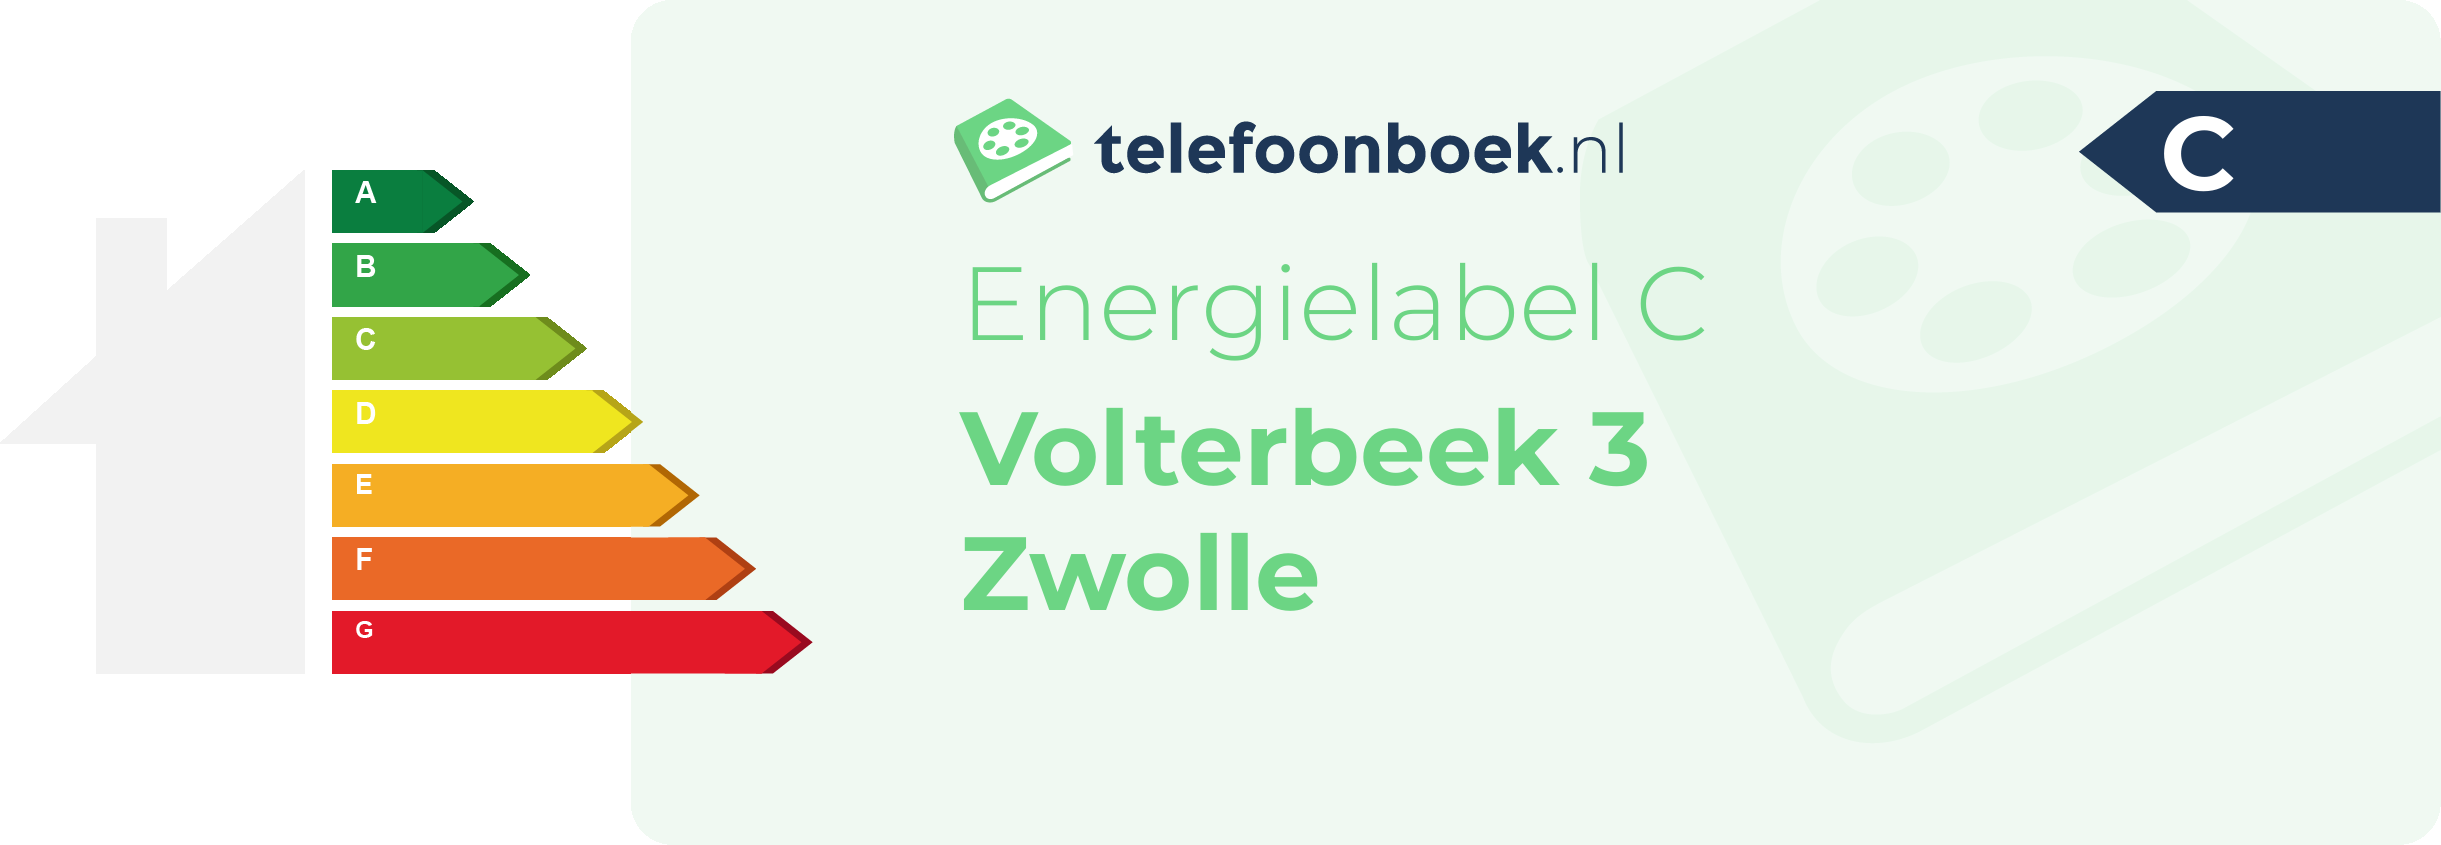 Energielabel Volterbeek 3 Zwolle